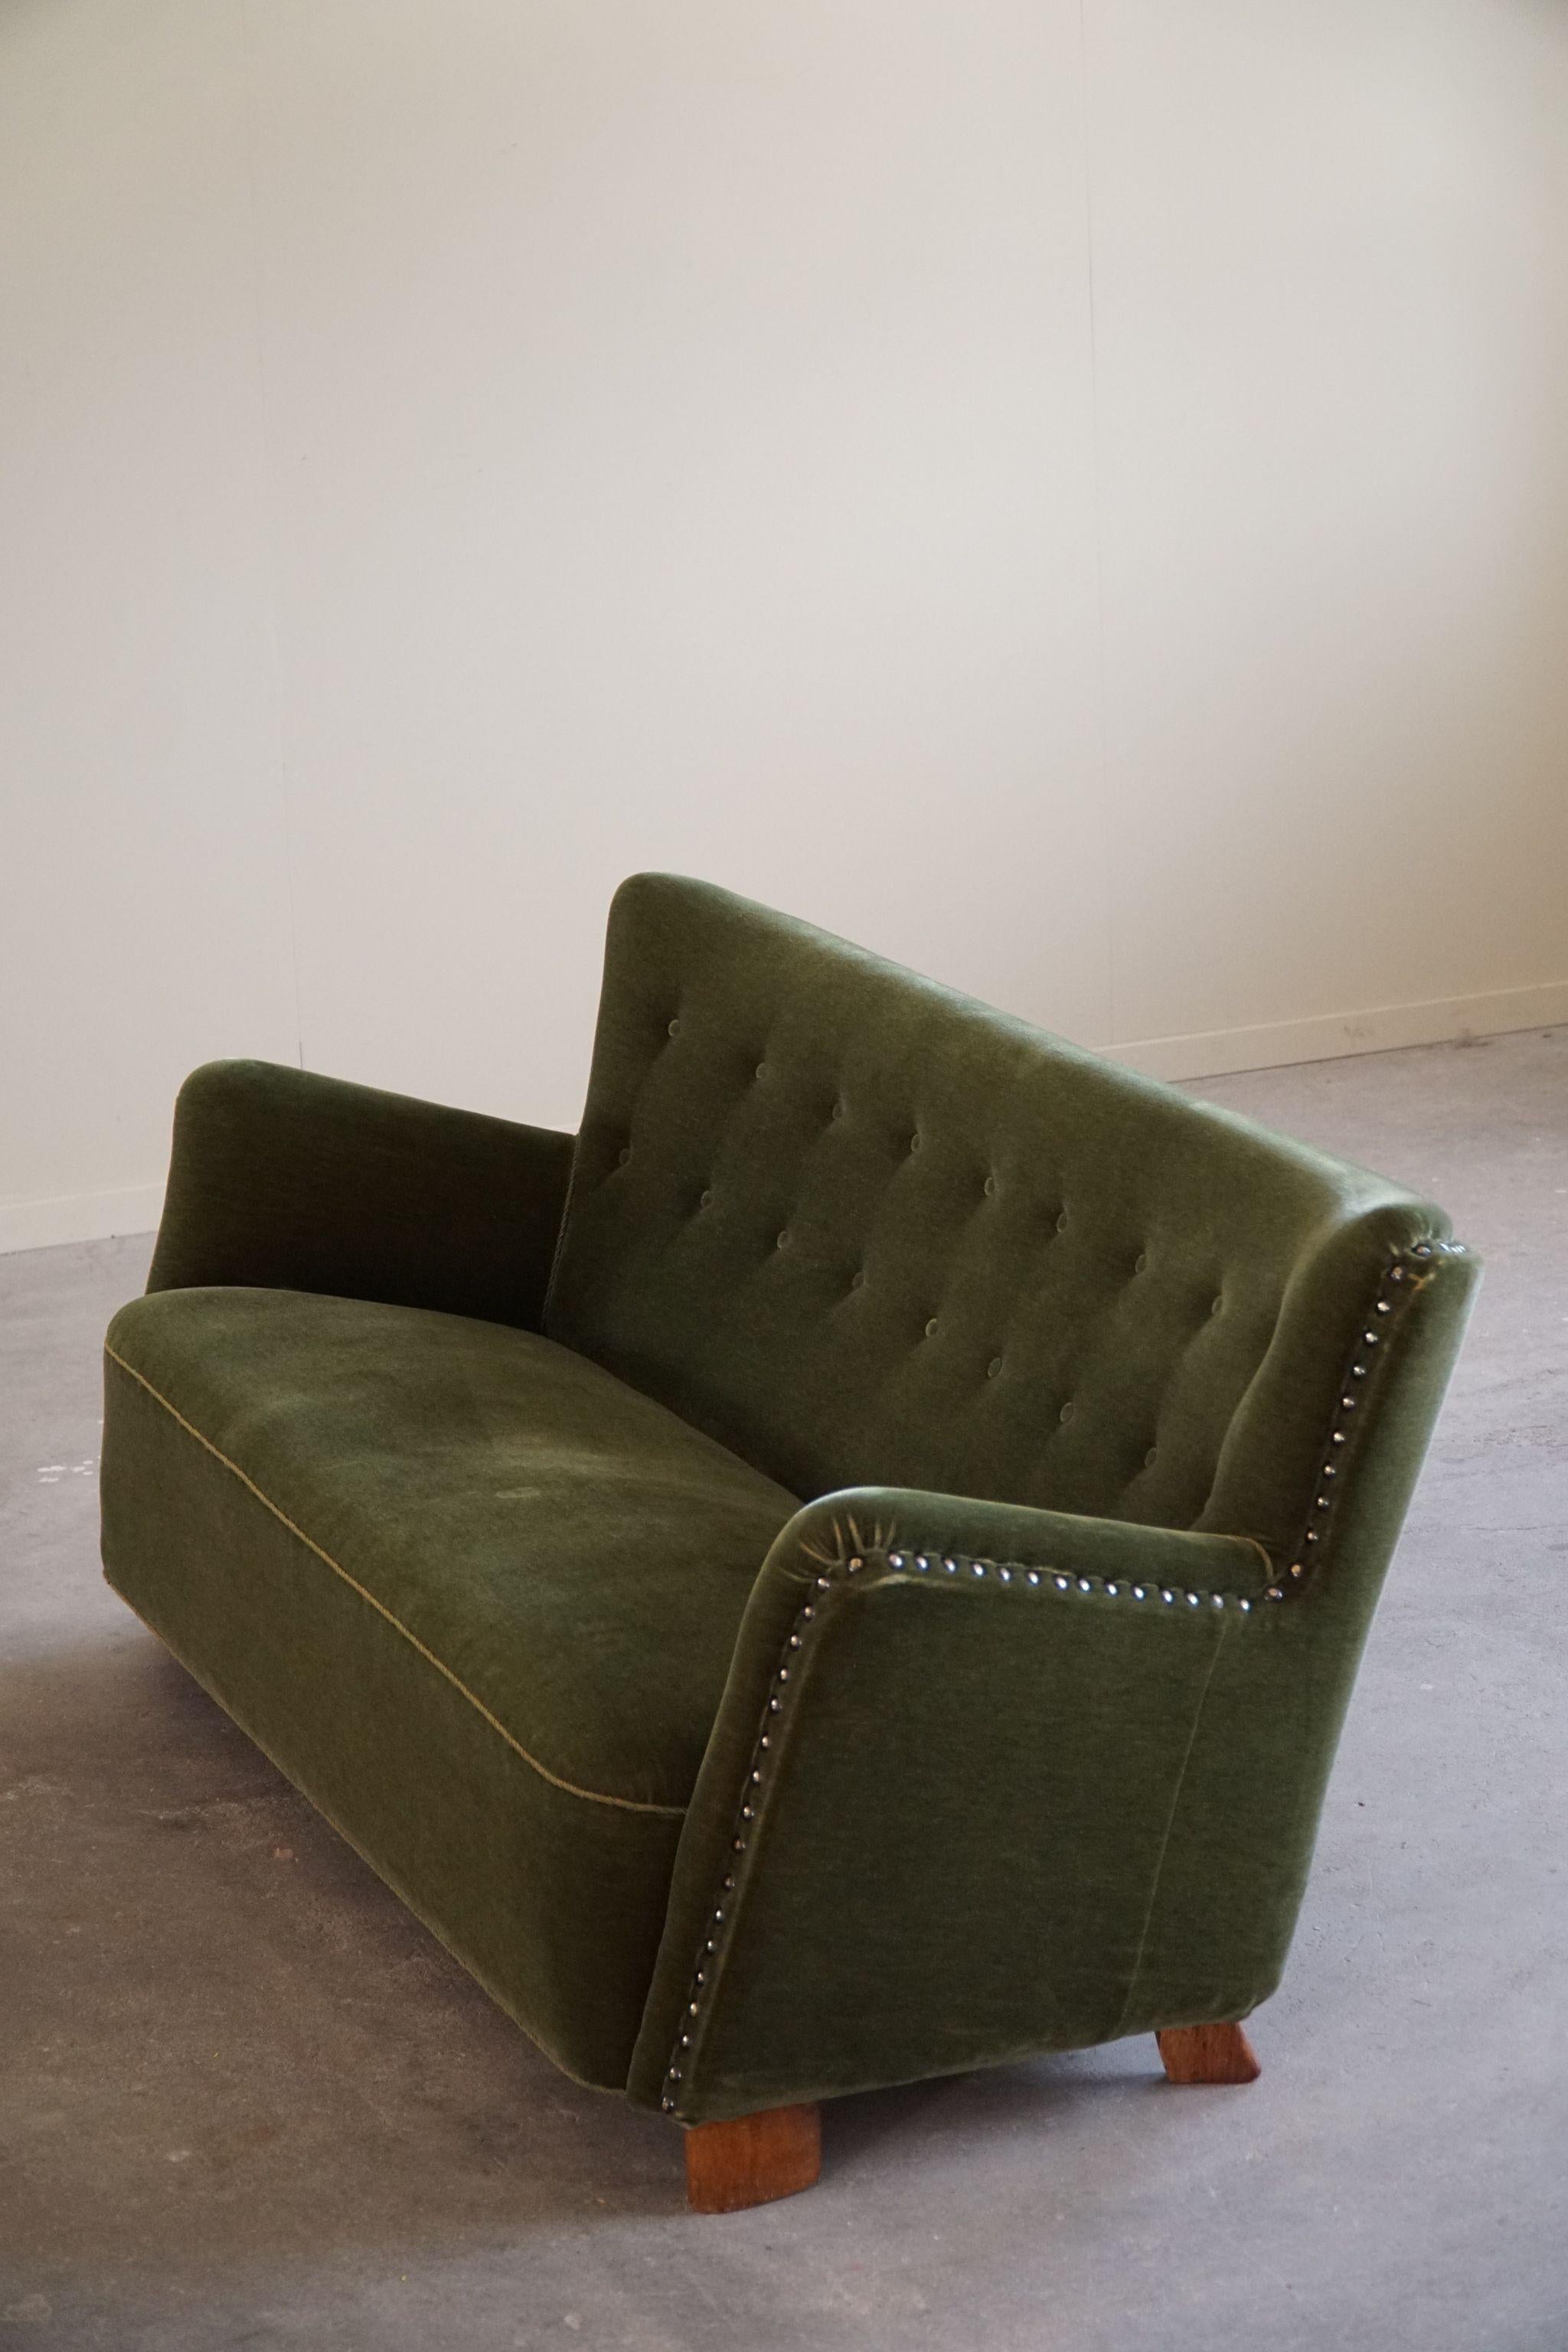 Dieses schöne Dreisitzer-Sofa im originalen grünen Samt verkörpert das dänische Mid Century Modern Design der 1940er Jahre. Sein üppiger grüner Samtbezug strahlt Luxus und Komfort aus, während die Eichenholzbeine für Stabilität und einen Hauch von